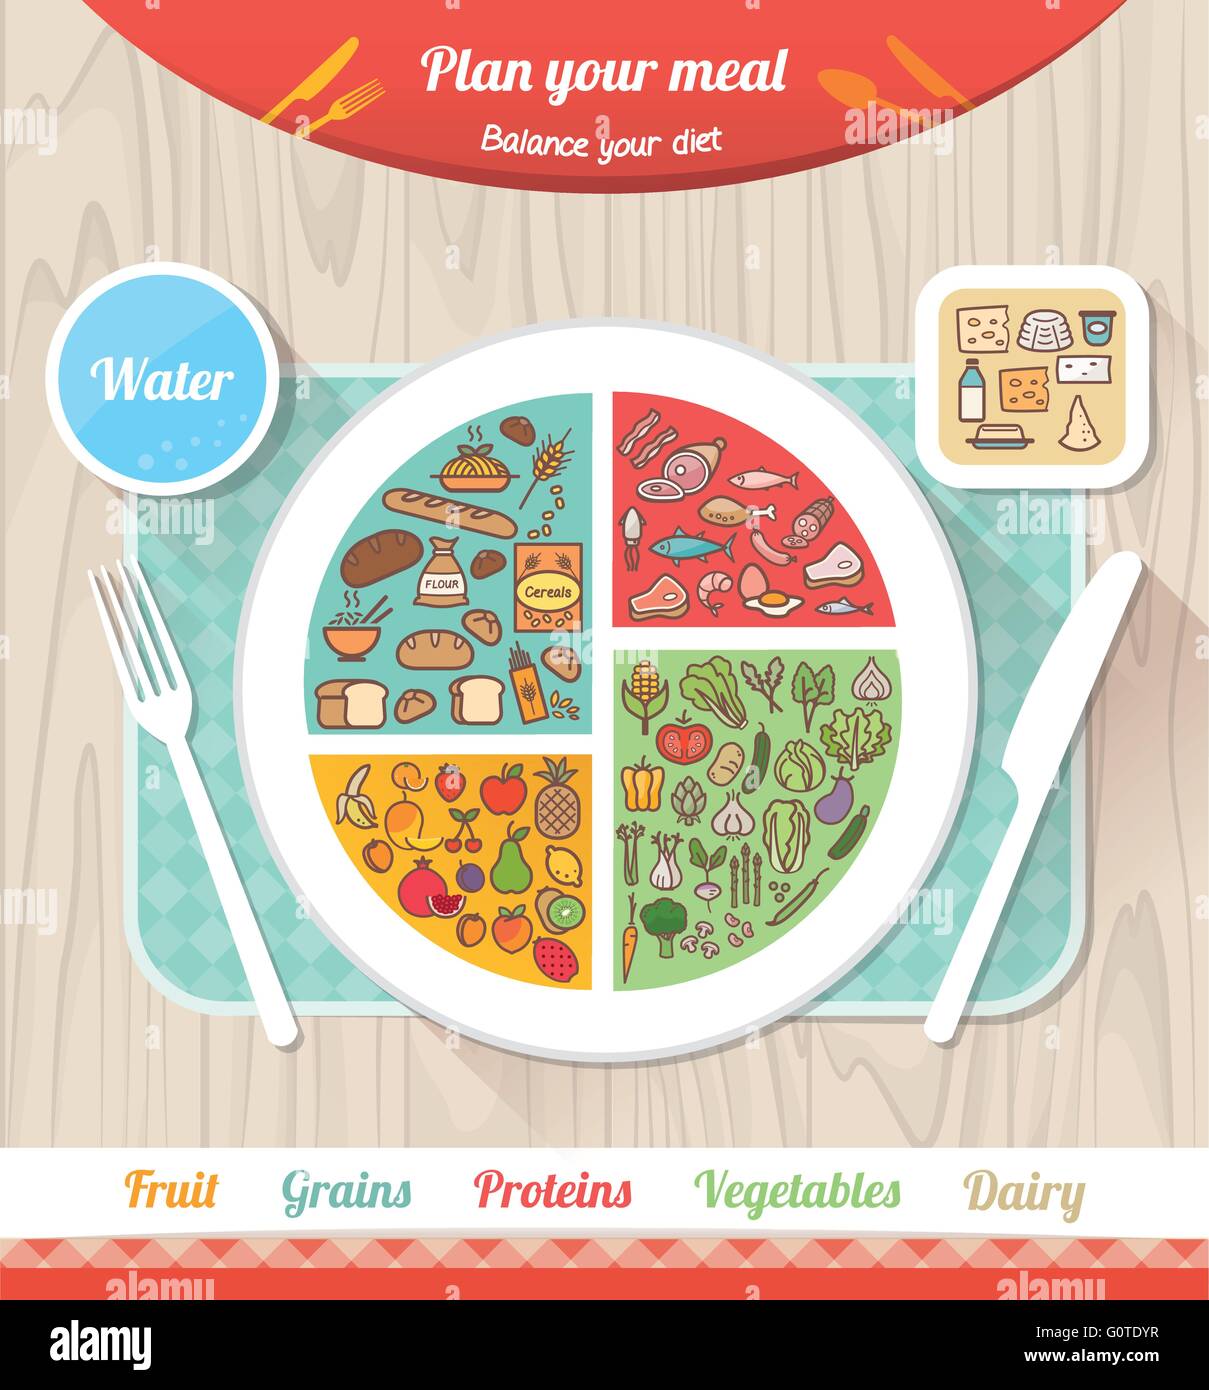 Planen Sie Ihre Mahlzeit Infografik mit Schale, Diagramm und Symbolen, gesunde Ernährung und Diät-Konzept Stock Vektor